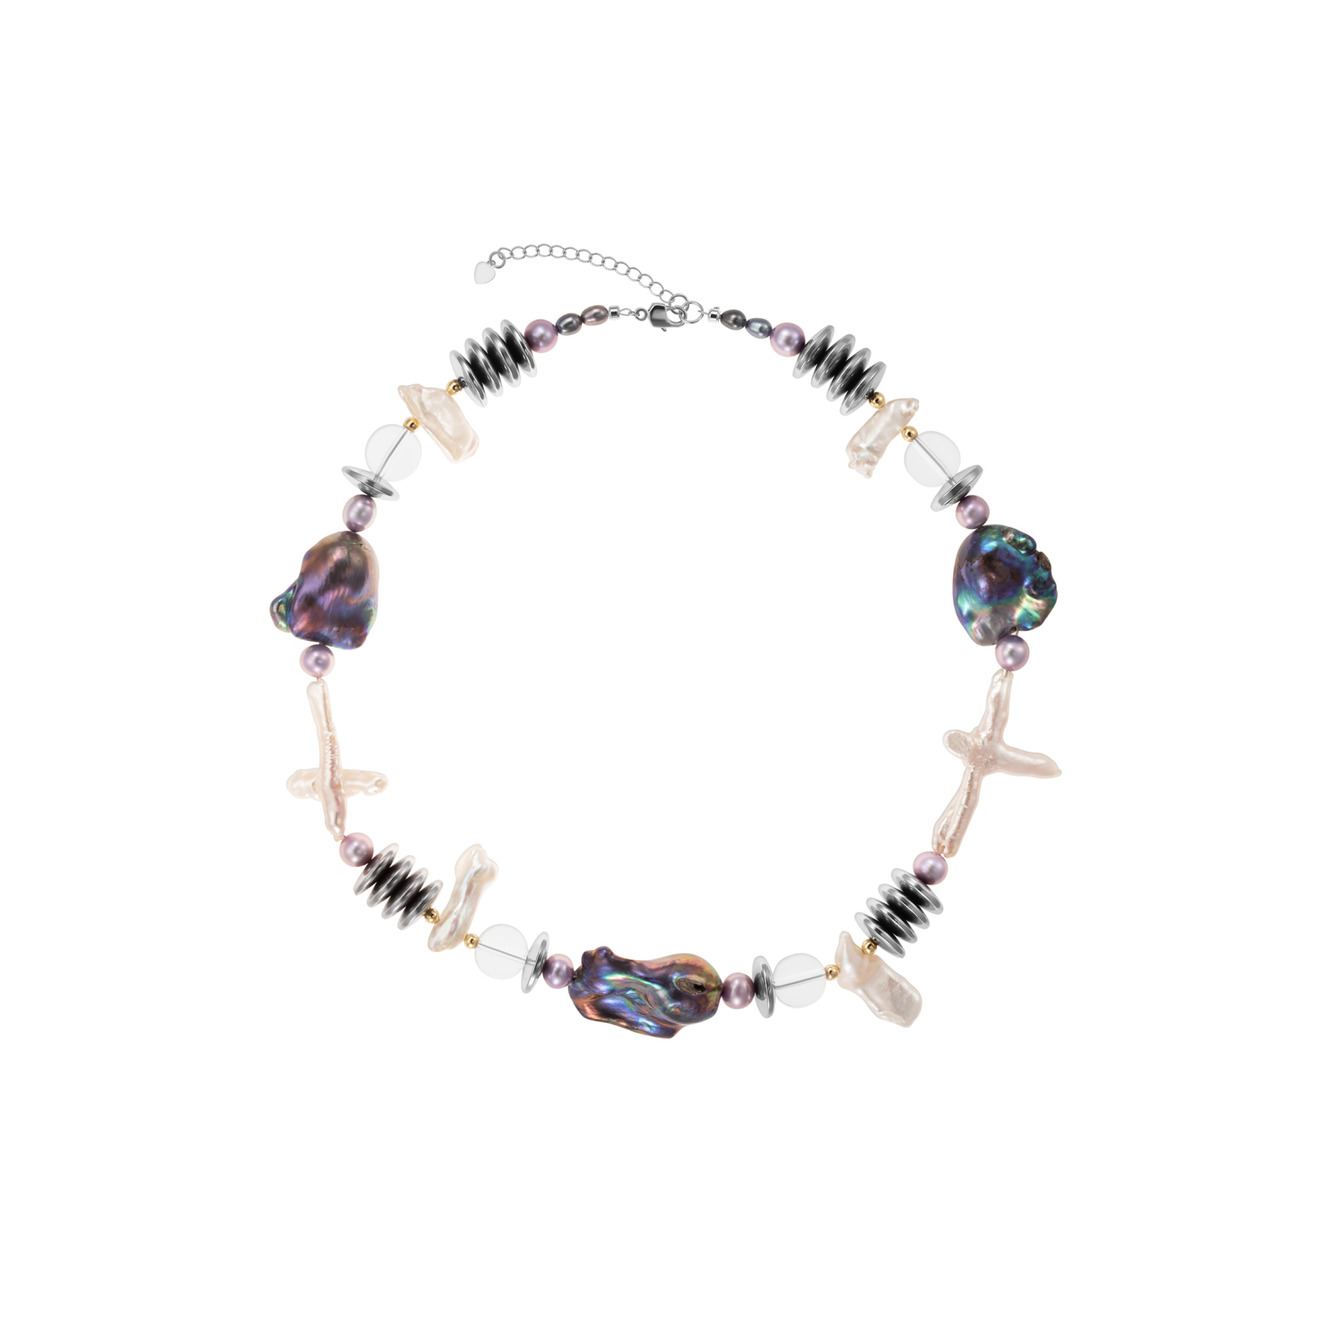 Kotlo Studio Ожерелье с крупным черным жемчугом, гематитом и хрусталем Alien женское ожерелье с жемчугом и эмалью